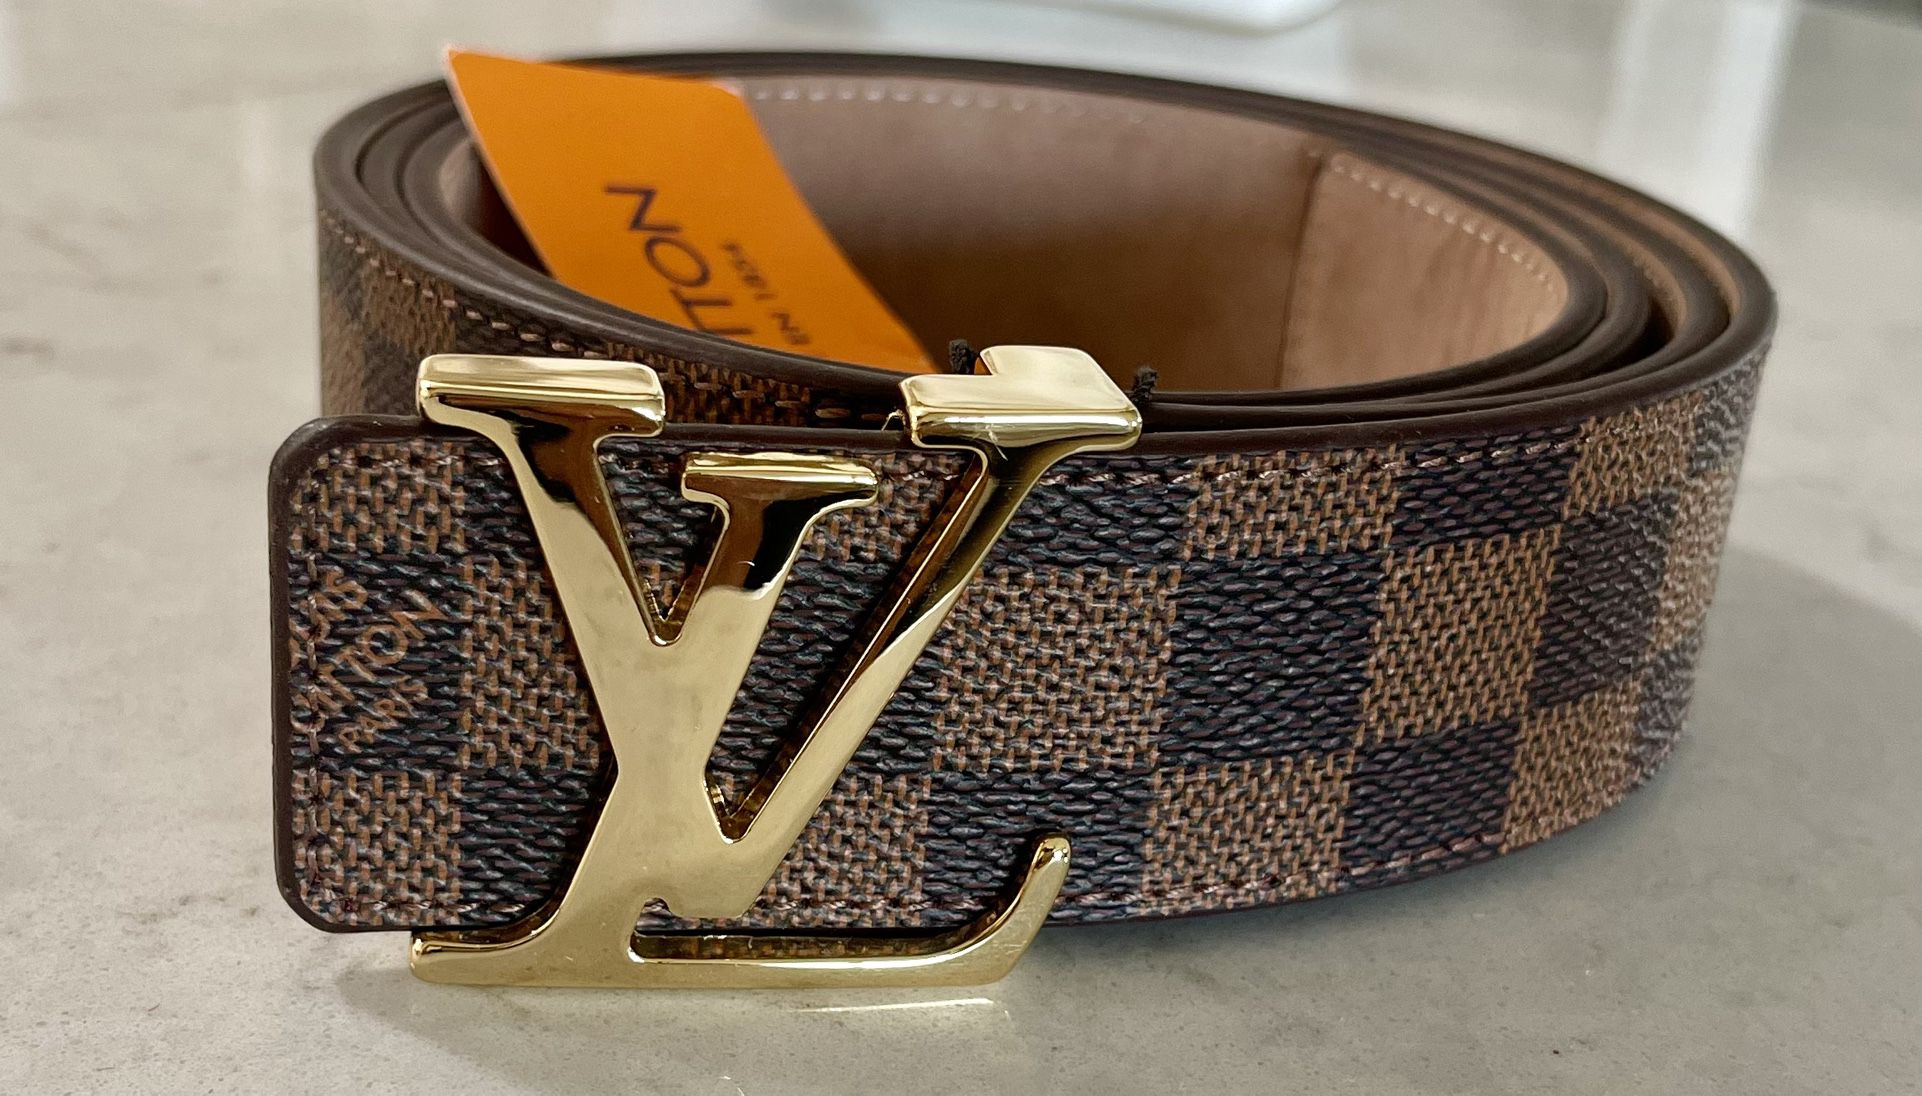 Louis Vuitton Damier Azur Belt for Sale in Tampa, FL - OfferUp